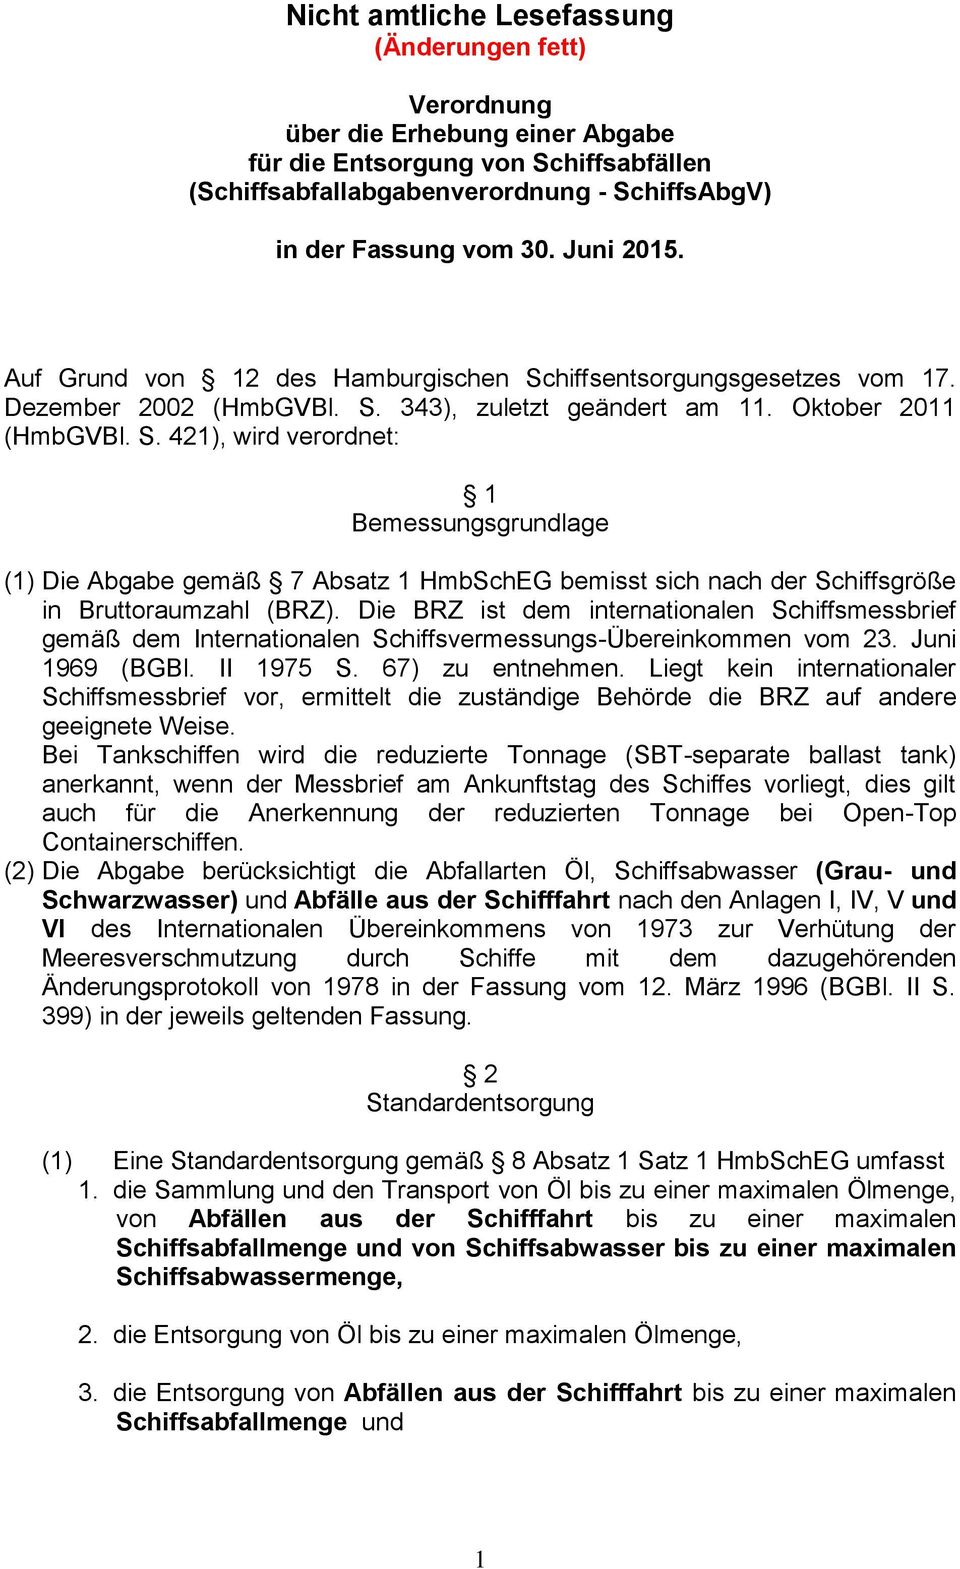 Die BRZ ist dem internationalen Schiffsmessbrief gemäß dem Internationalen Schiffsvermessungs-Übereinkommen vom 23. Juni 1969 (BGBl. II 1975 S. 67) zu entnehmen.